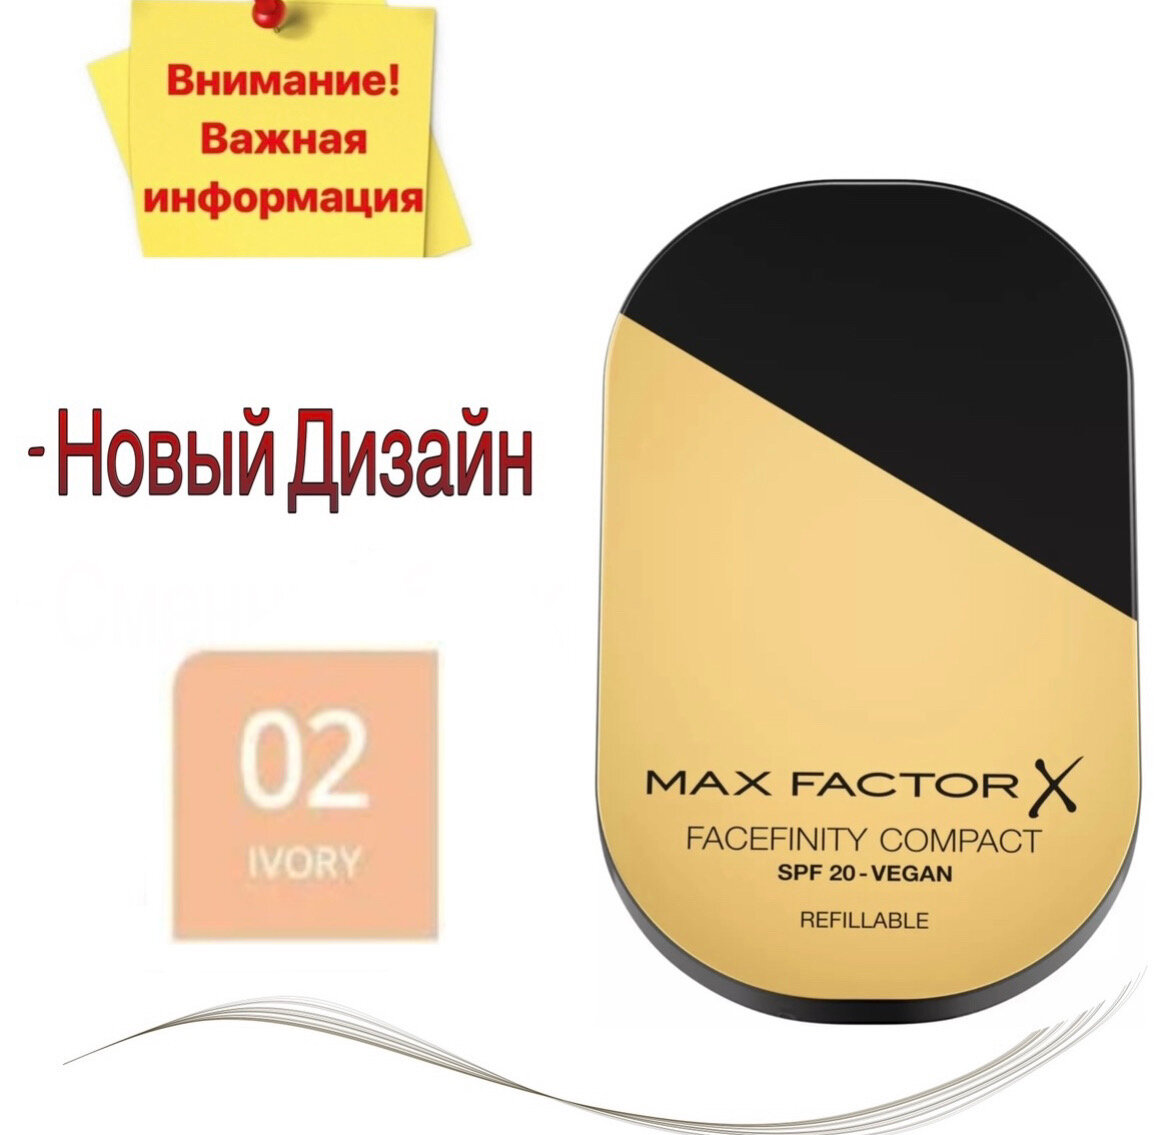 Max Factor Пудра компактная Facefinity 1 шт. 02 ivory 10 г